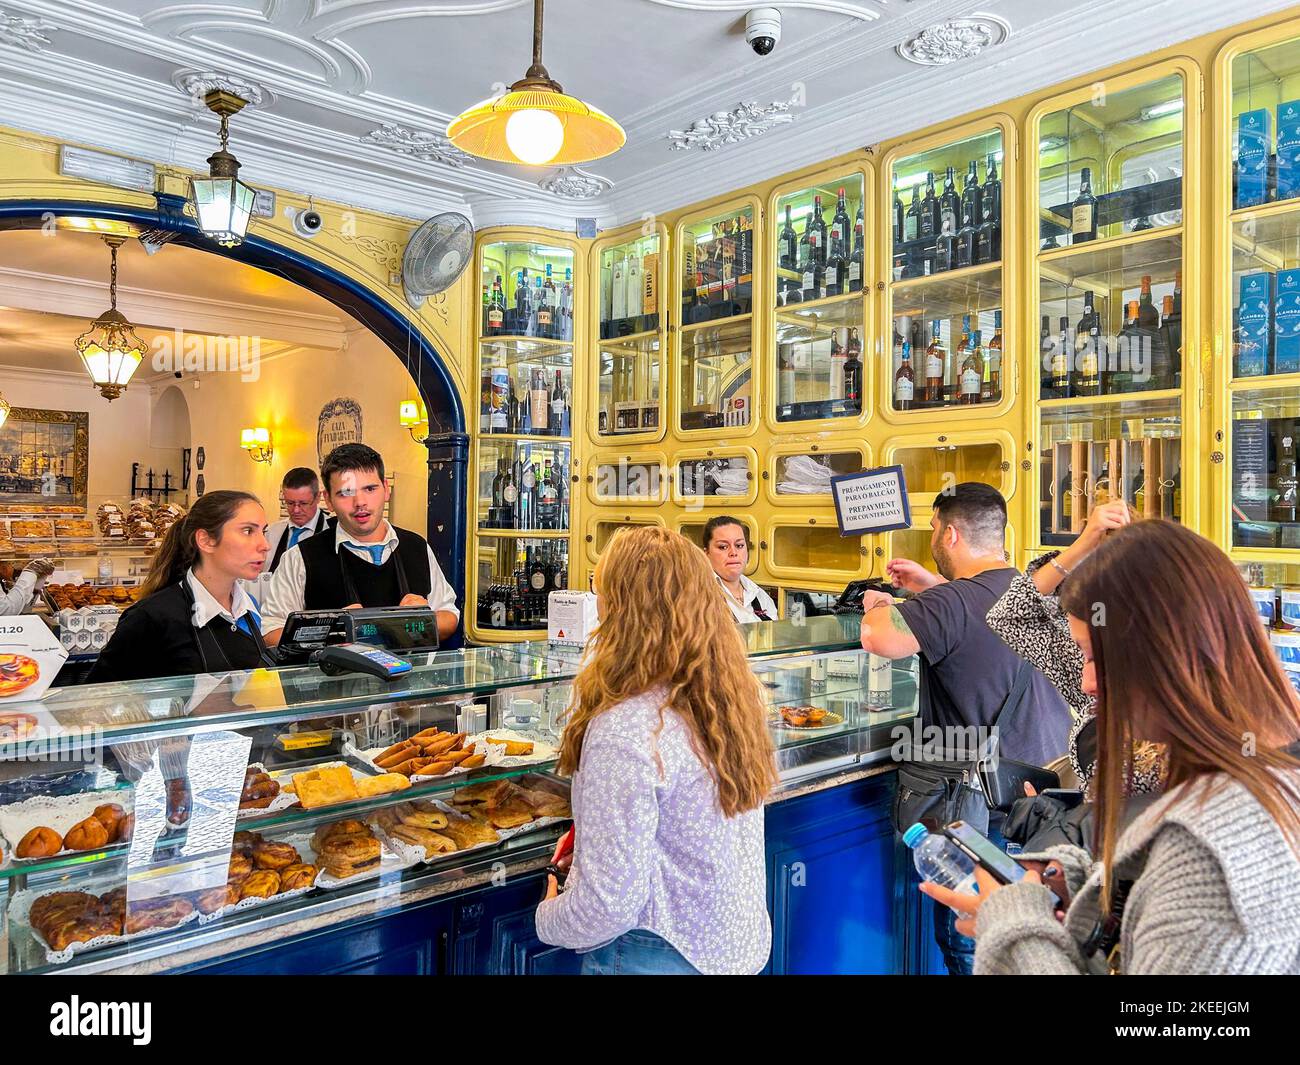 Lisbona, Portogallo, all'interno del locale negozio di panetteria portoghese, torte al forno, in esposizione, specialità locali 'Pastiis de Belem' Foto Stock